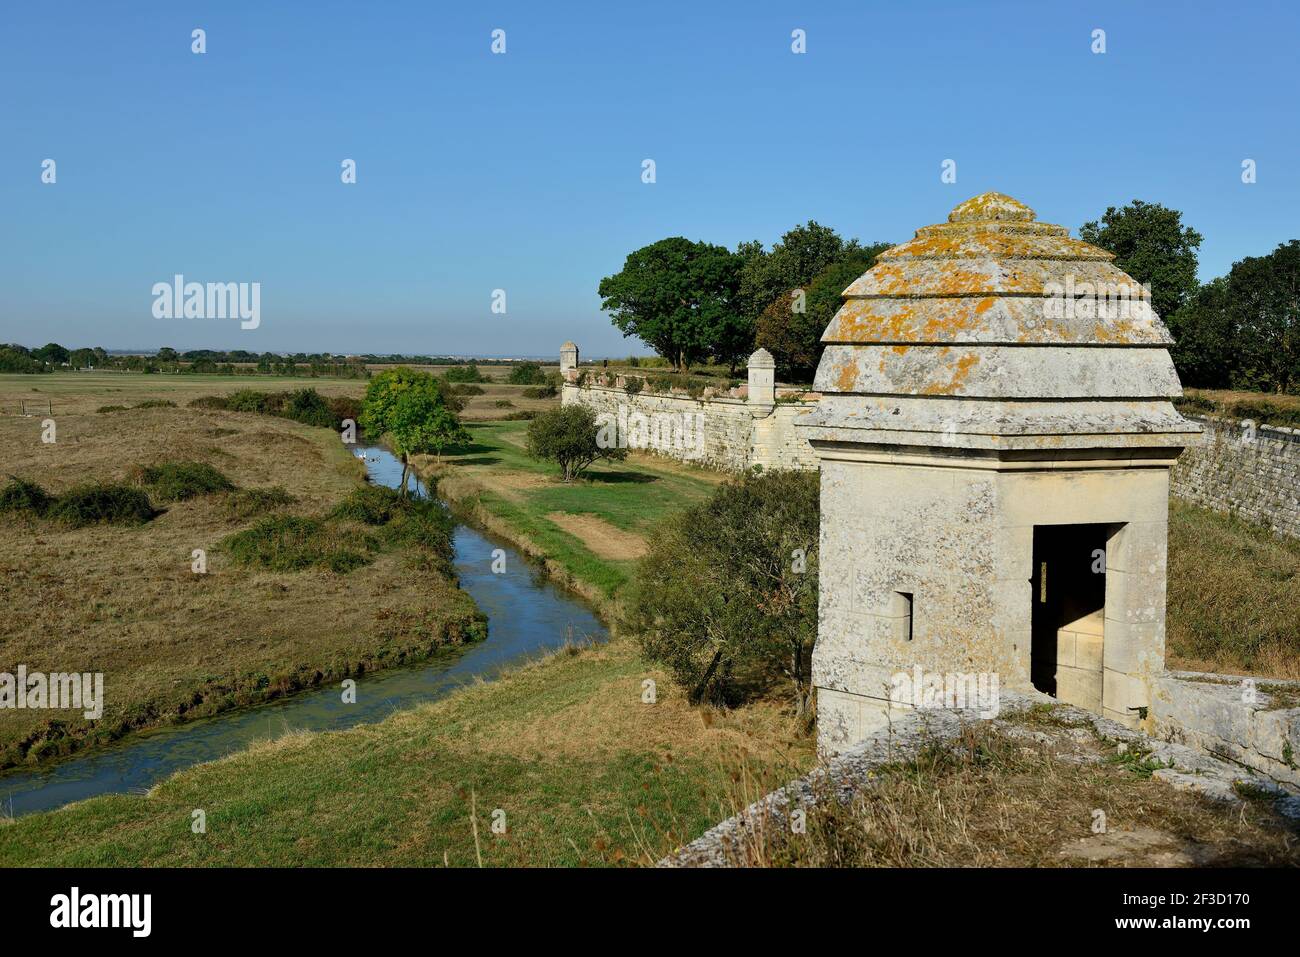 Brouage (centre-ouest de la France) : bartizan sur les remparts de la citadelle et des marais. Brouage a reçu le label "plus beaux villages de France" ( Banque D'Images